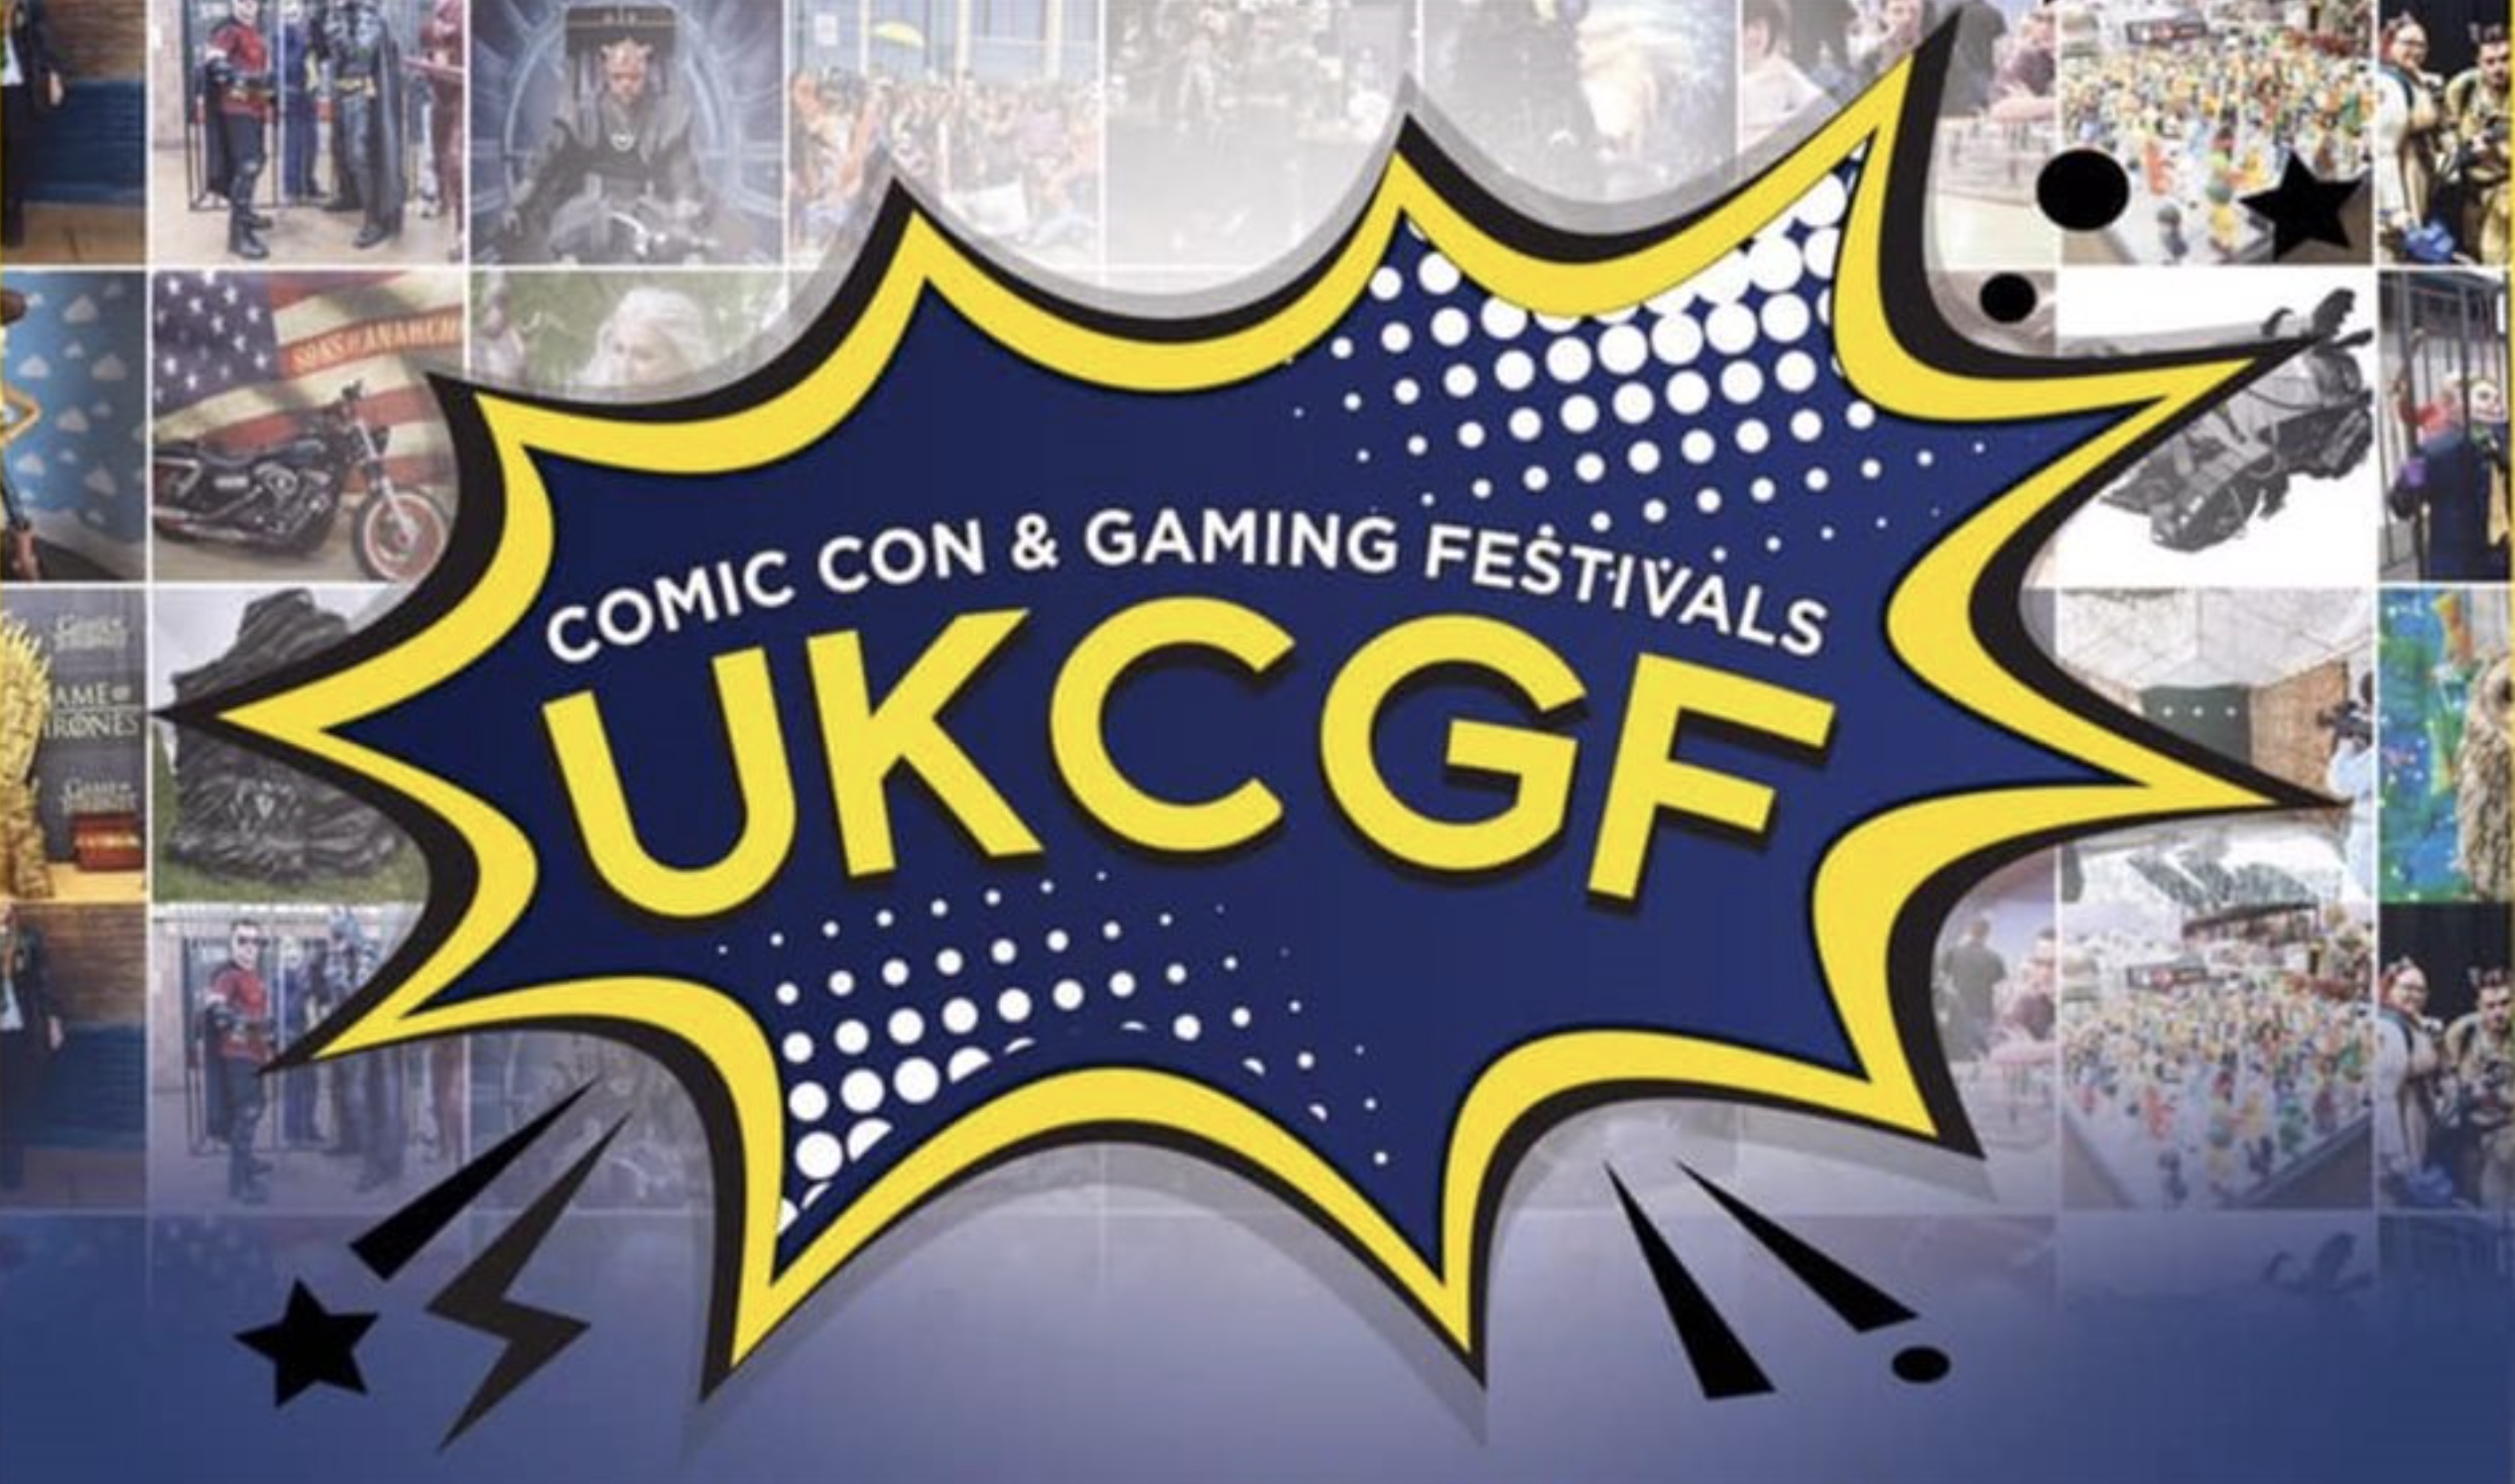 Comic Con & Gaming Festival